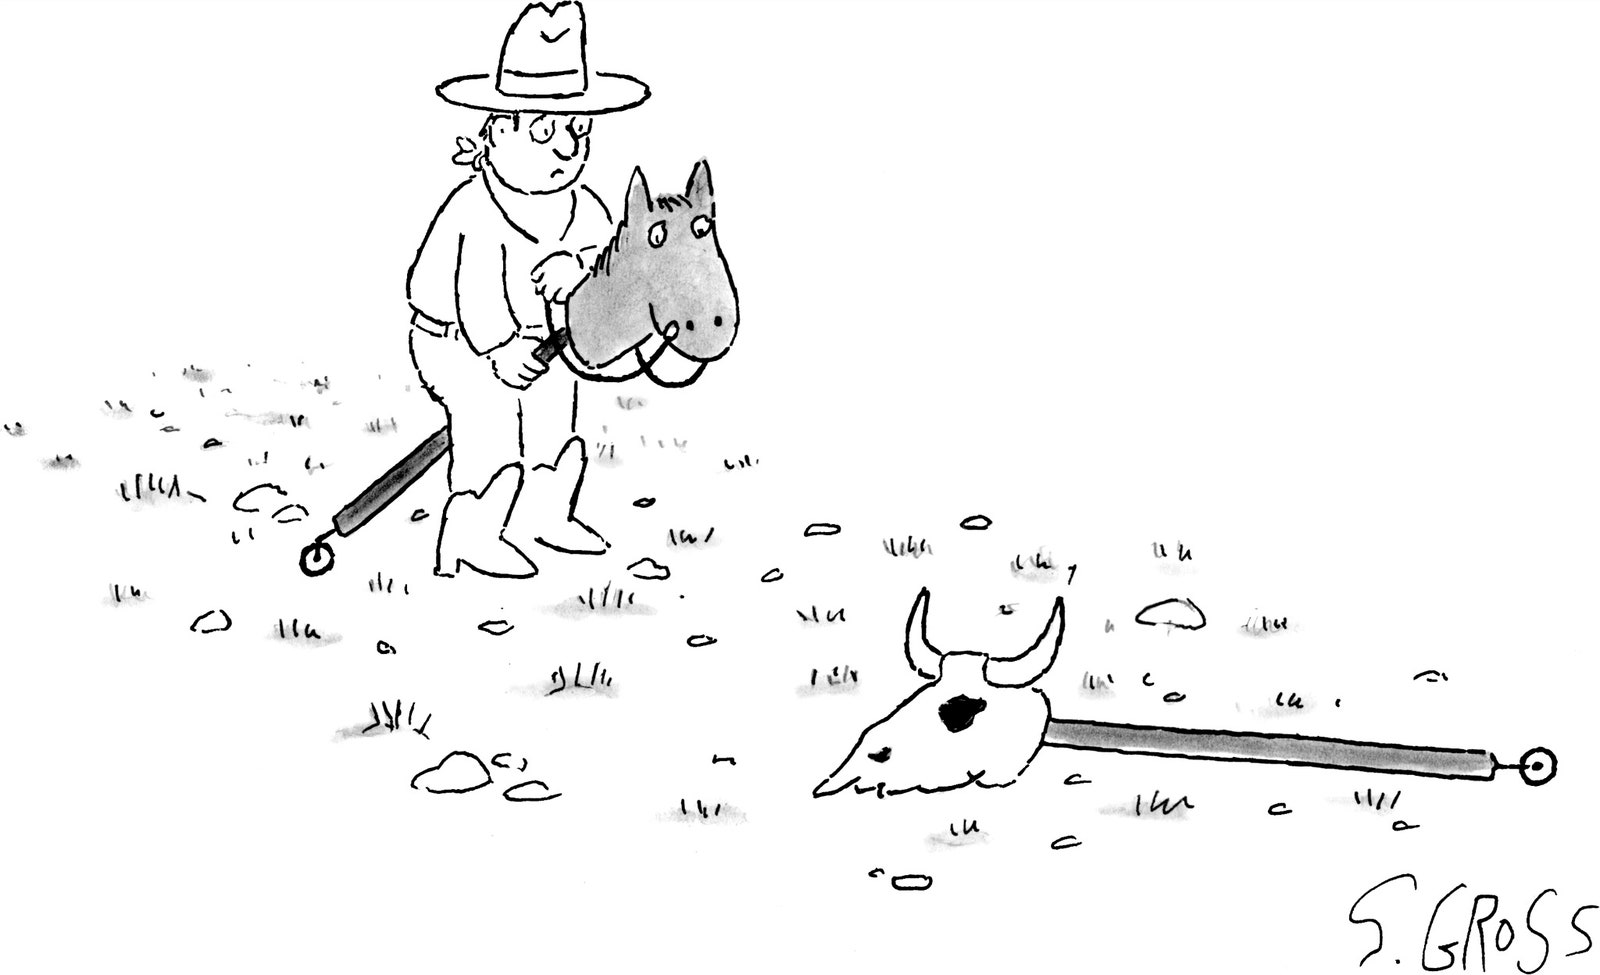 Eine Person, die auf einem Stockpferd reitet, findet einen toten Pferdestock auf dem Boden.